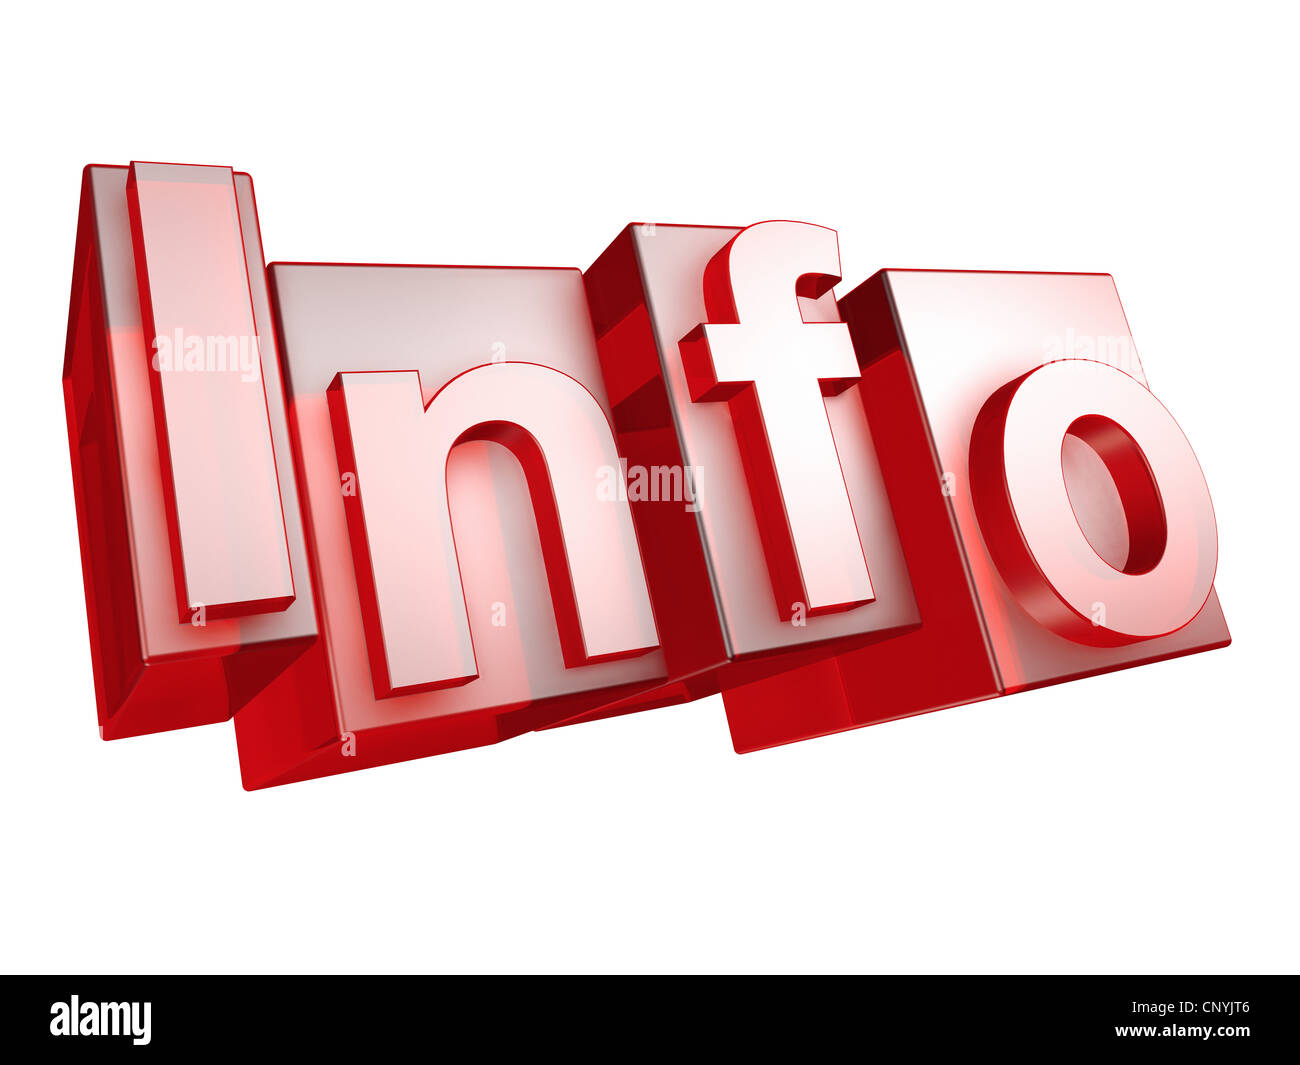 Le mot d'info en 3D lettres sur fond blanc - das Wort aus INFO 3D Buchstaben, freigestellt gesetzt auf weißem Hintergrund Banque D'Images